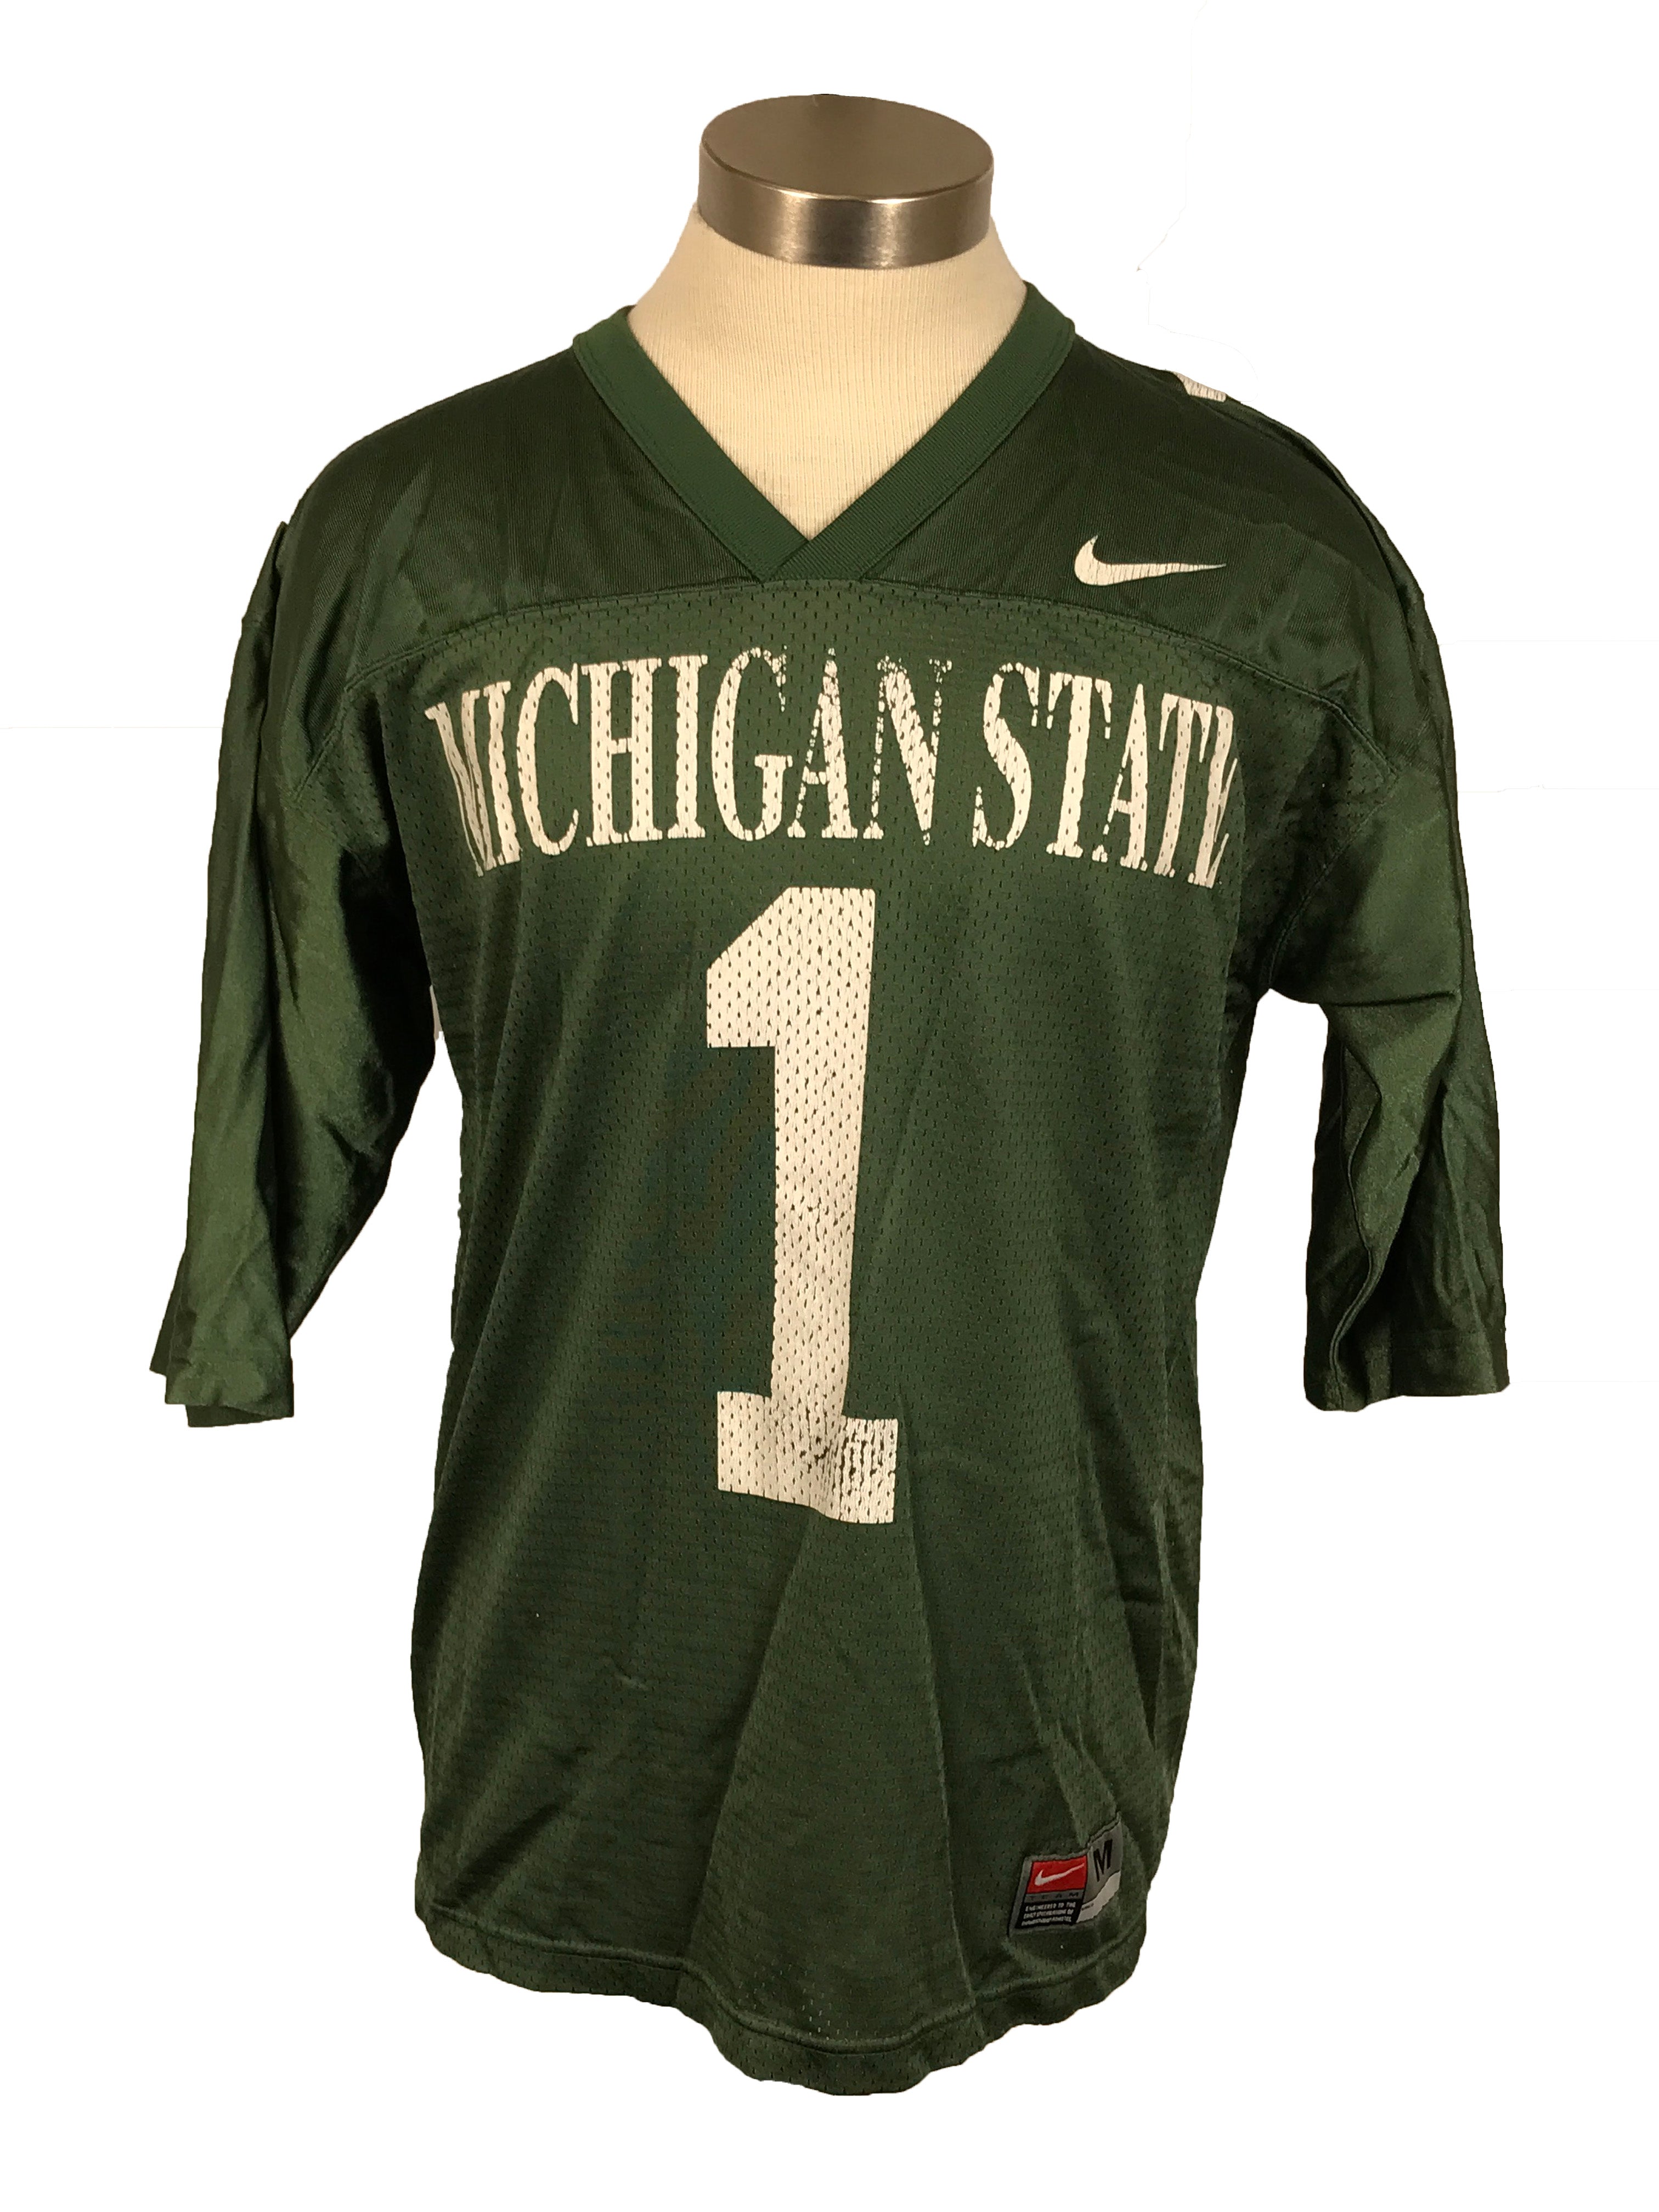 Nike Michigan State University Green Jersey Unisex Size Medium